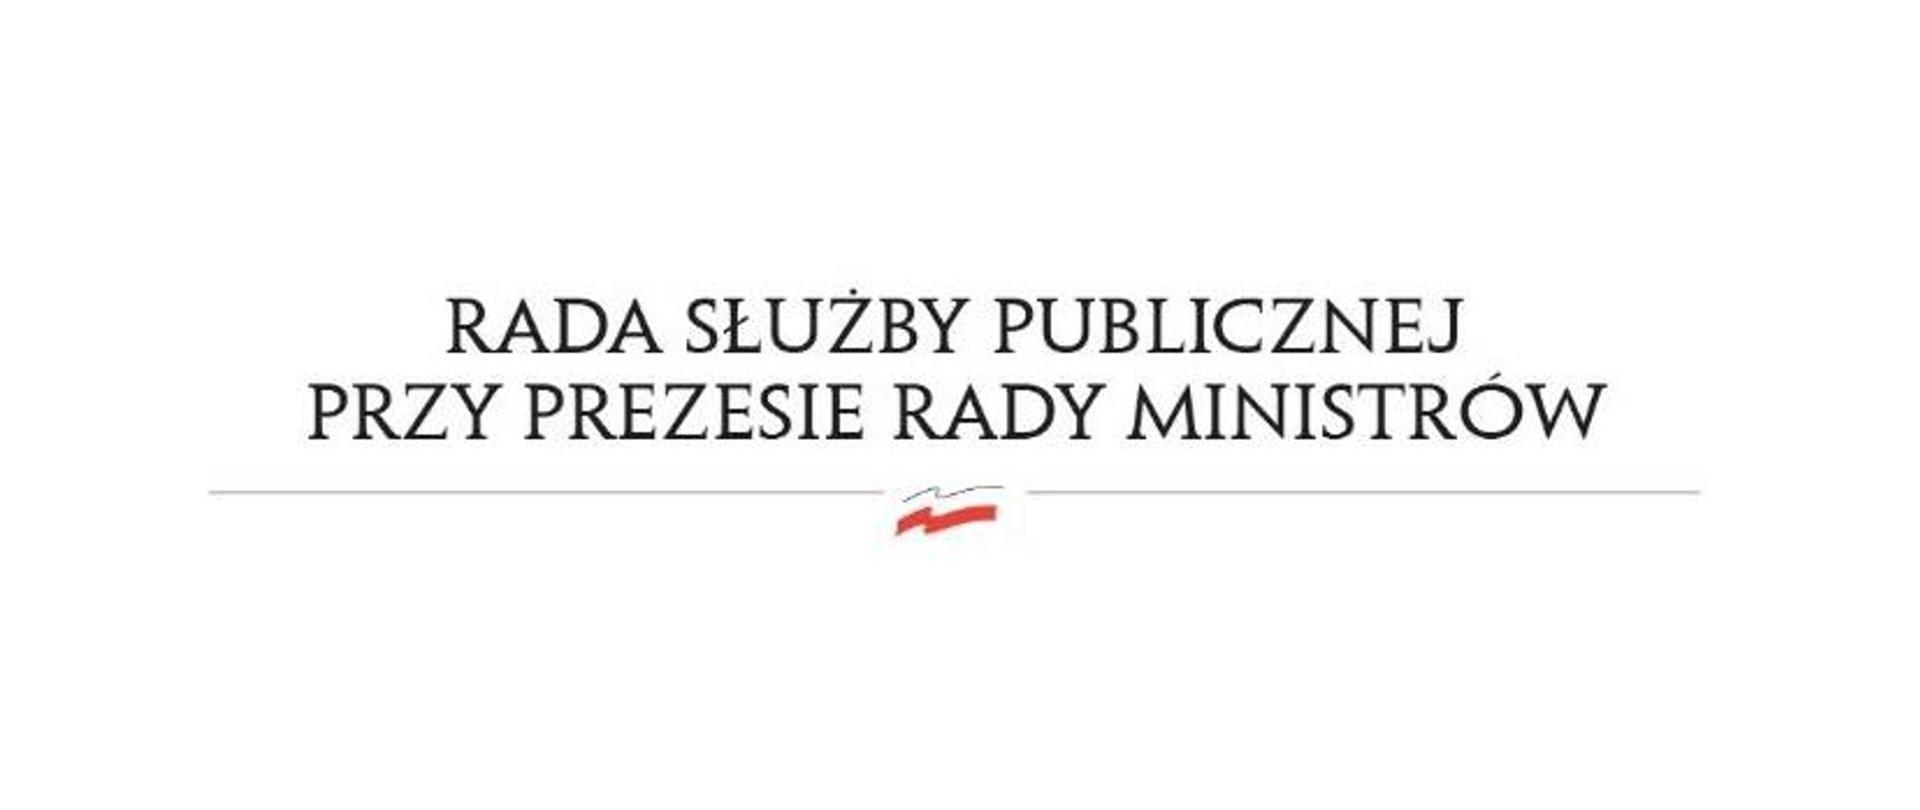 Logotyp Rady Służby Publicznej